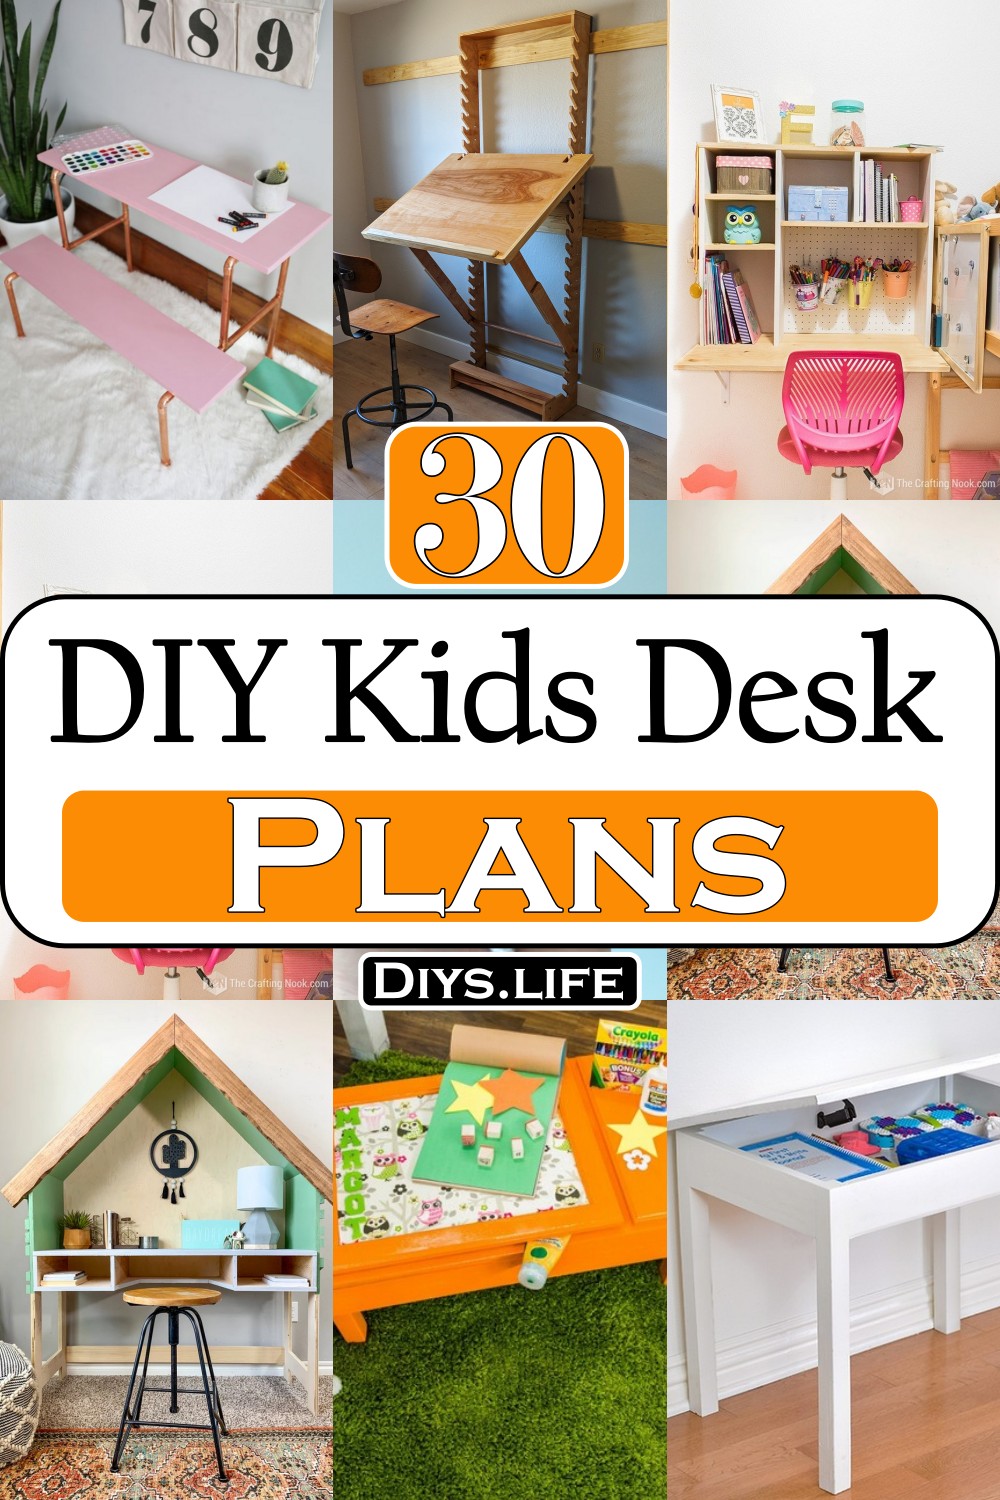 DIY Kids Desk Plans